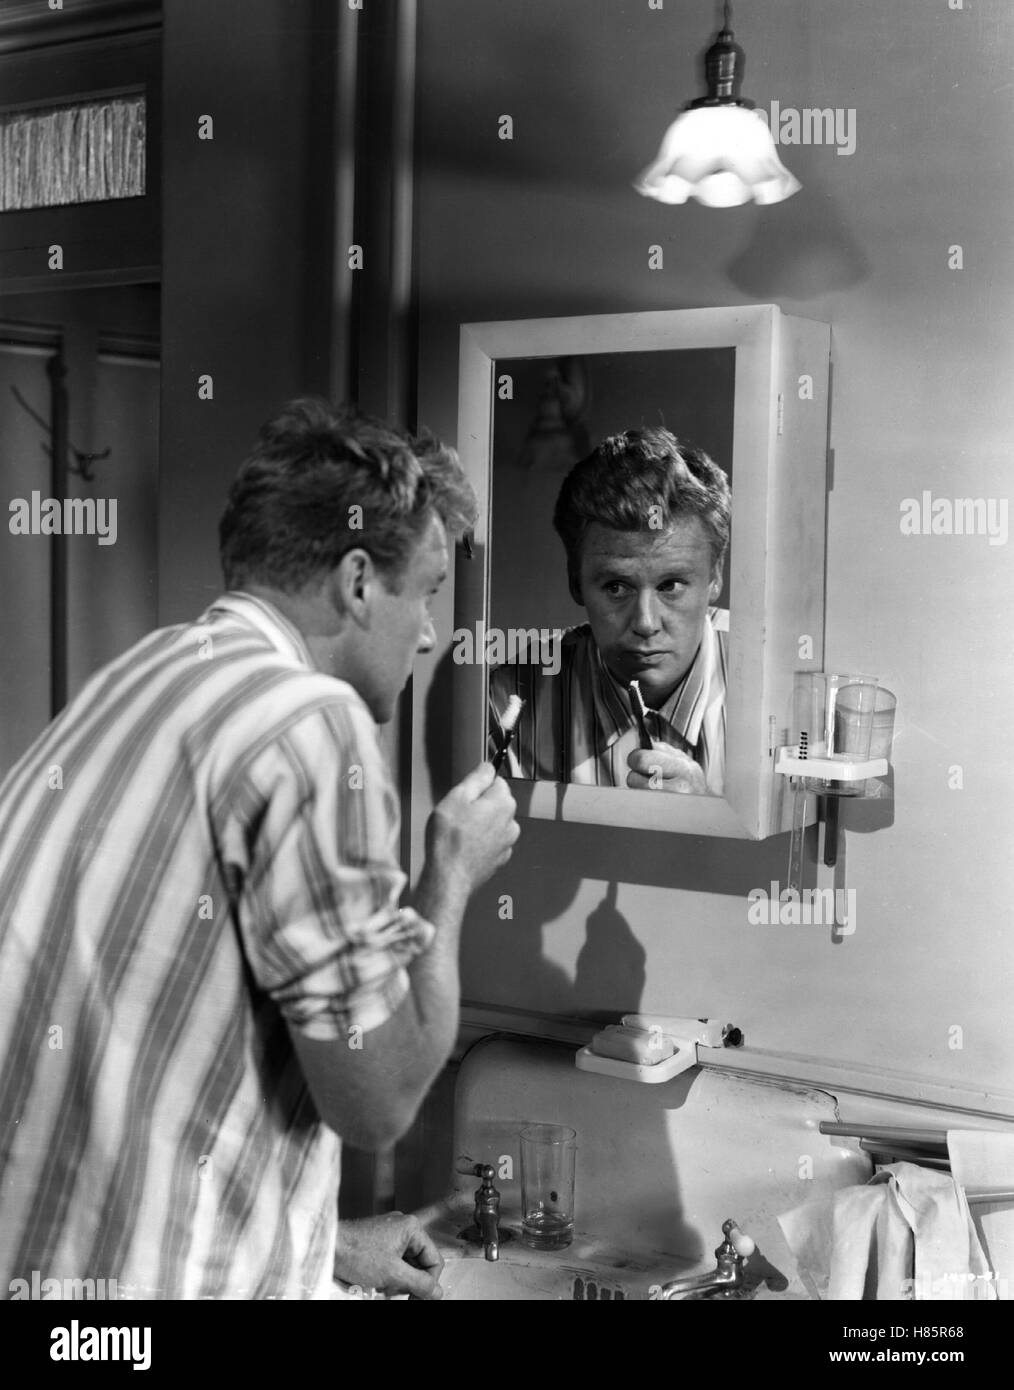 Von Katzen und Katern, (THE BIG HANGOVER) USA 1950 s/w, Regie: Norman Krasna, VAN JOHNSON, Stichwort: Spiegel, Zahnbürste, Zähneputzen Stock Photo